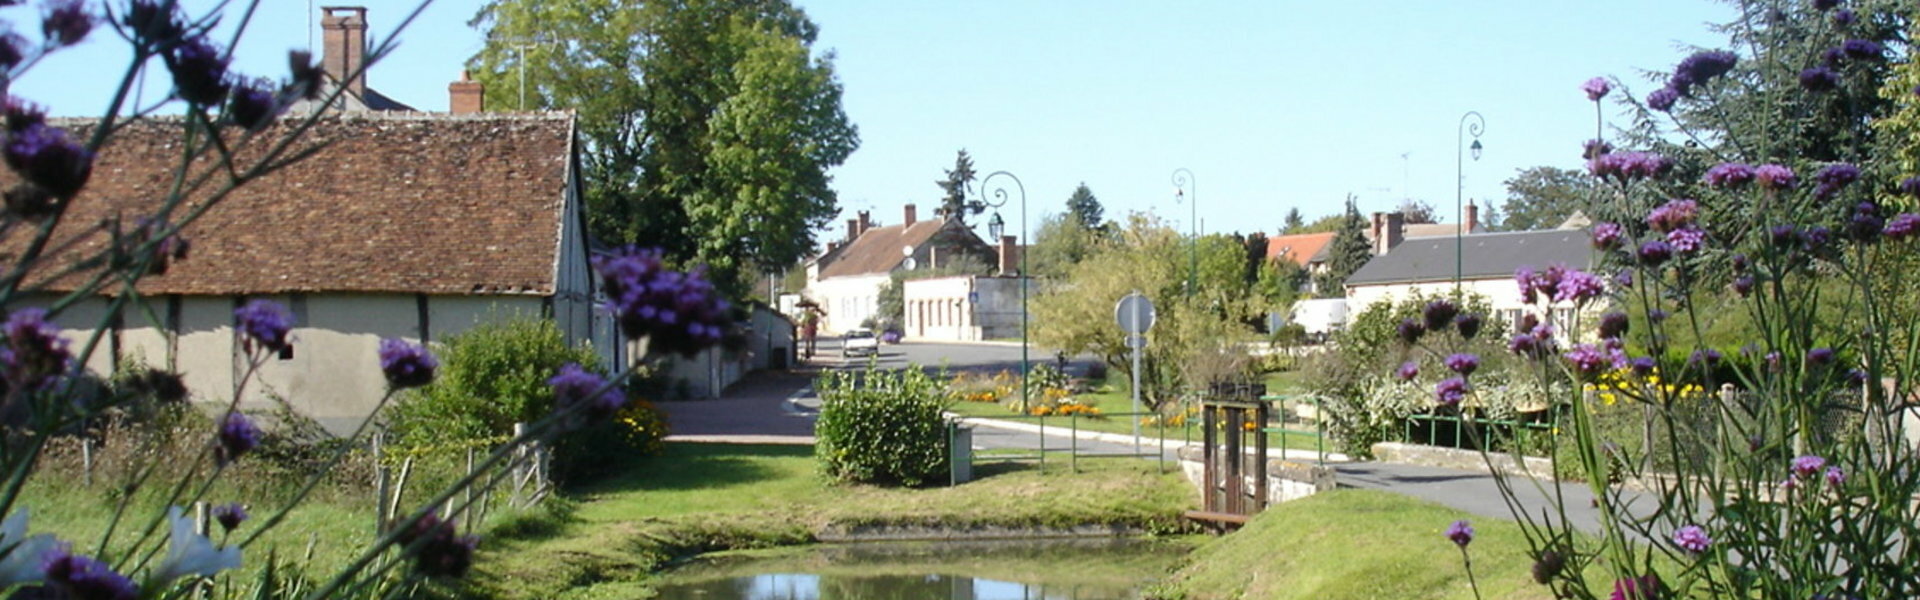 Bassin de Natation de Bellegarde